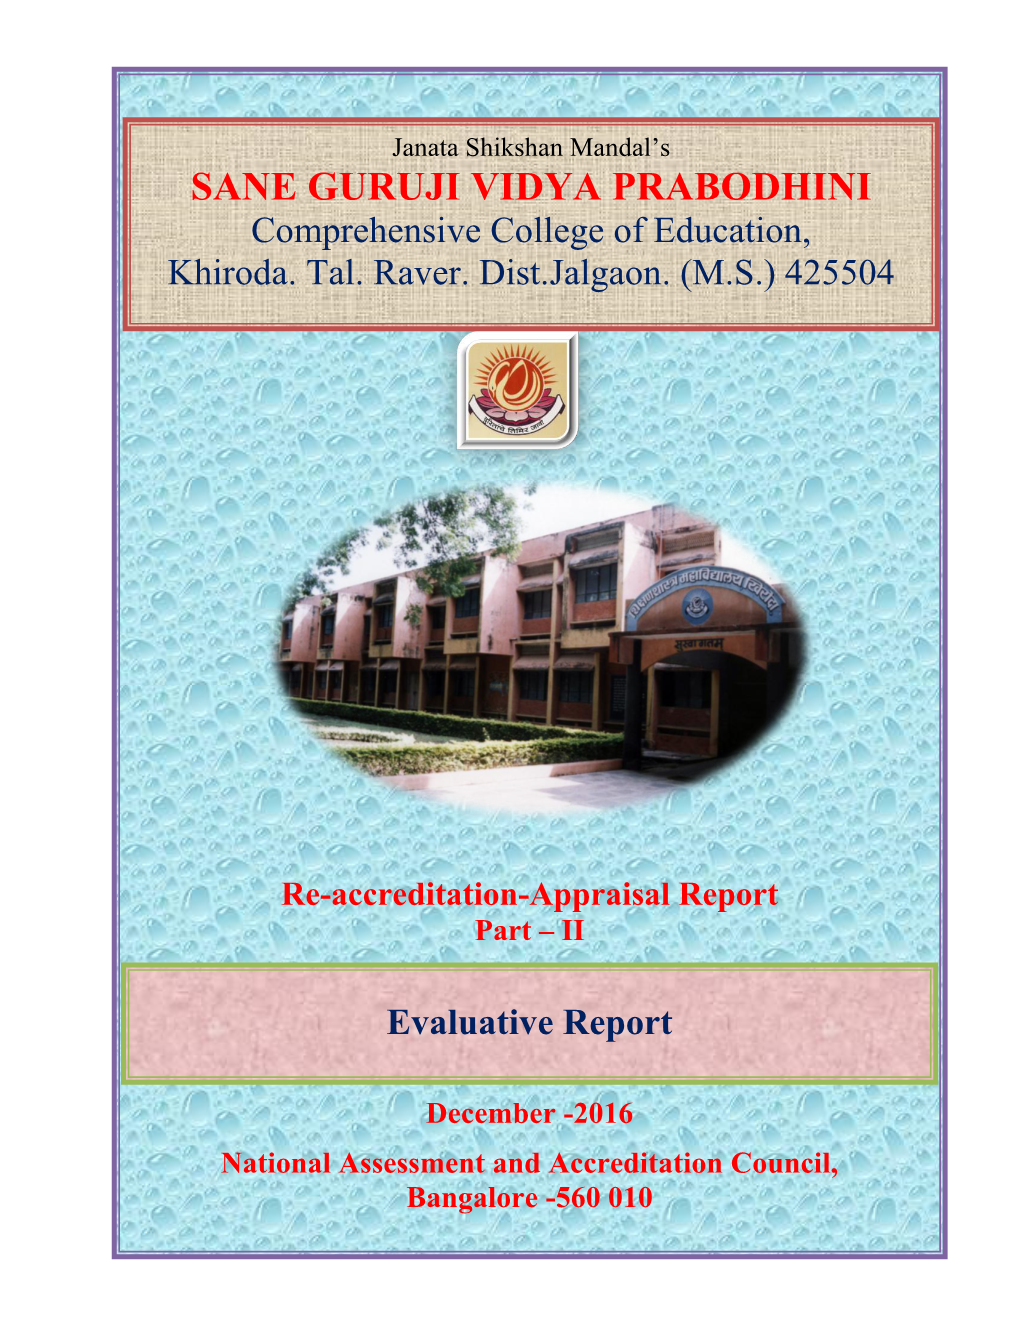 Sane Guruji Vidya Prabodhini